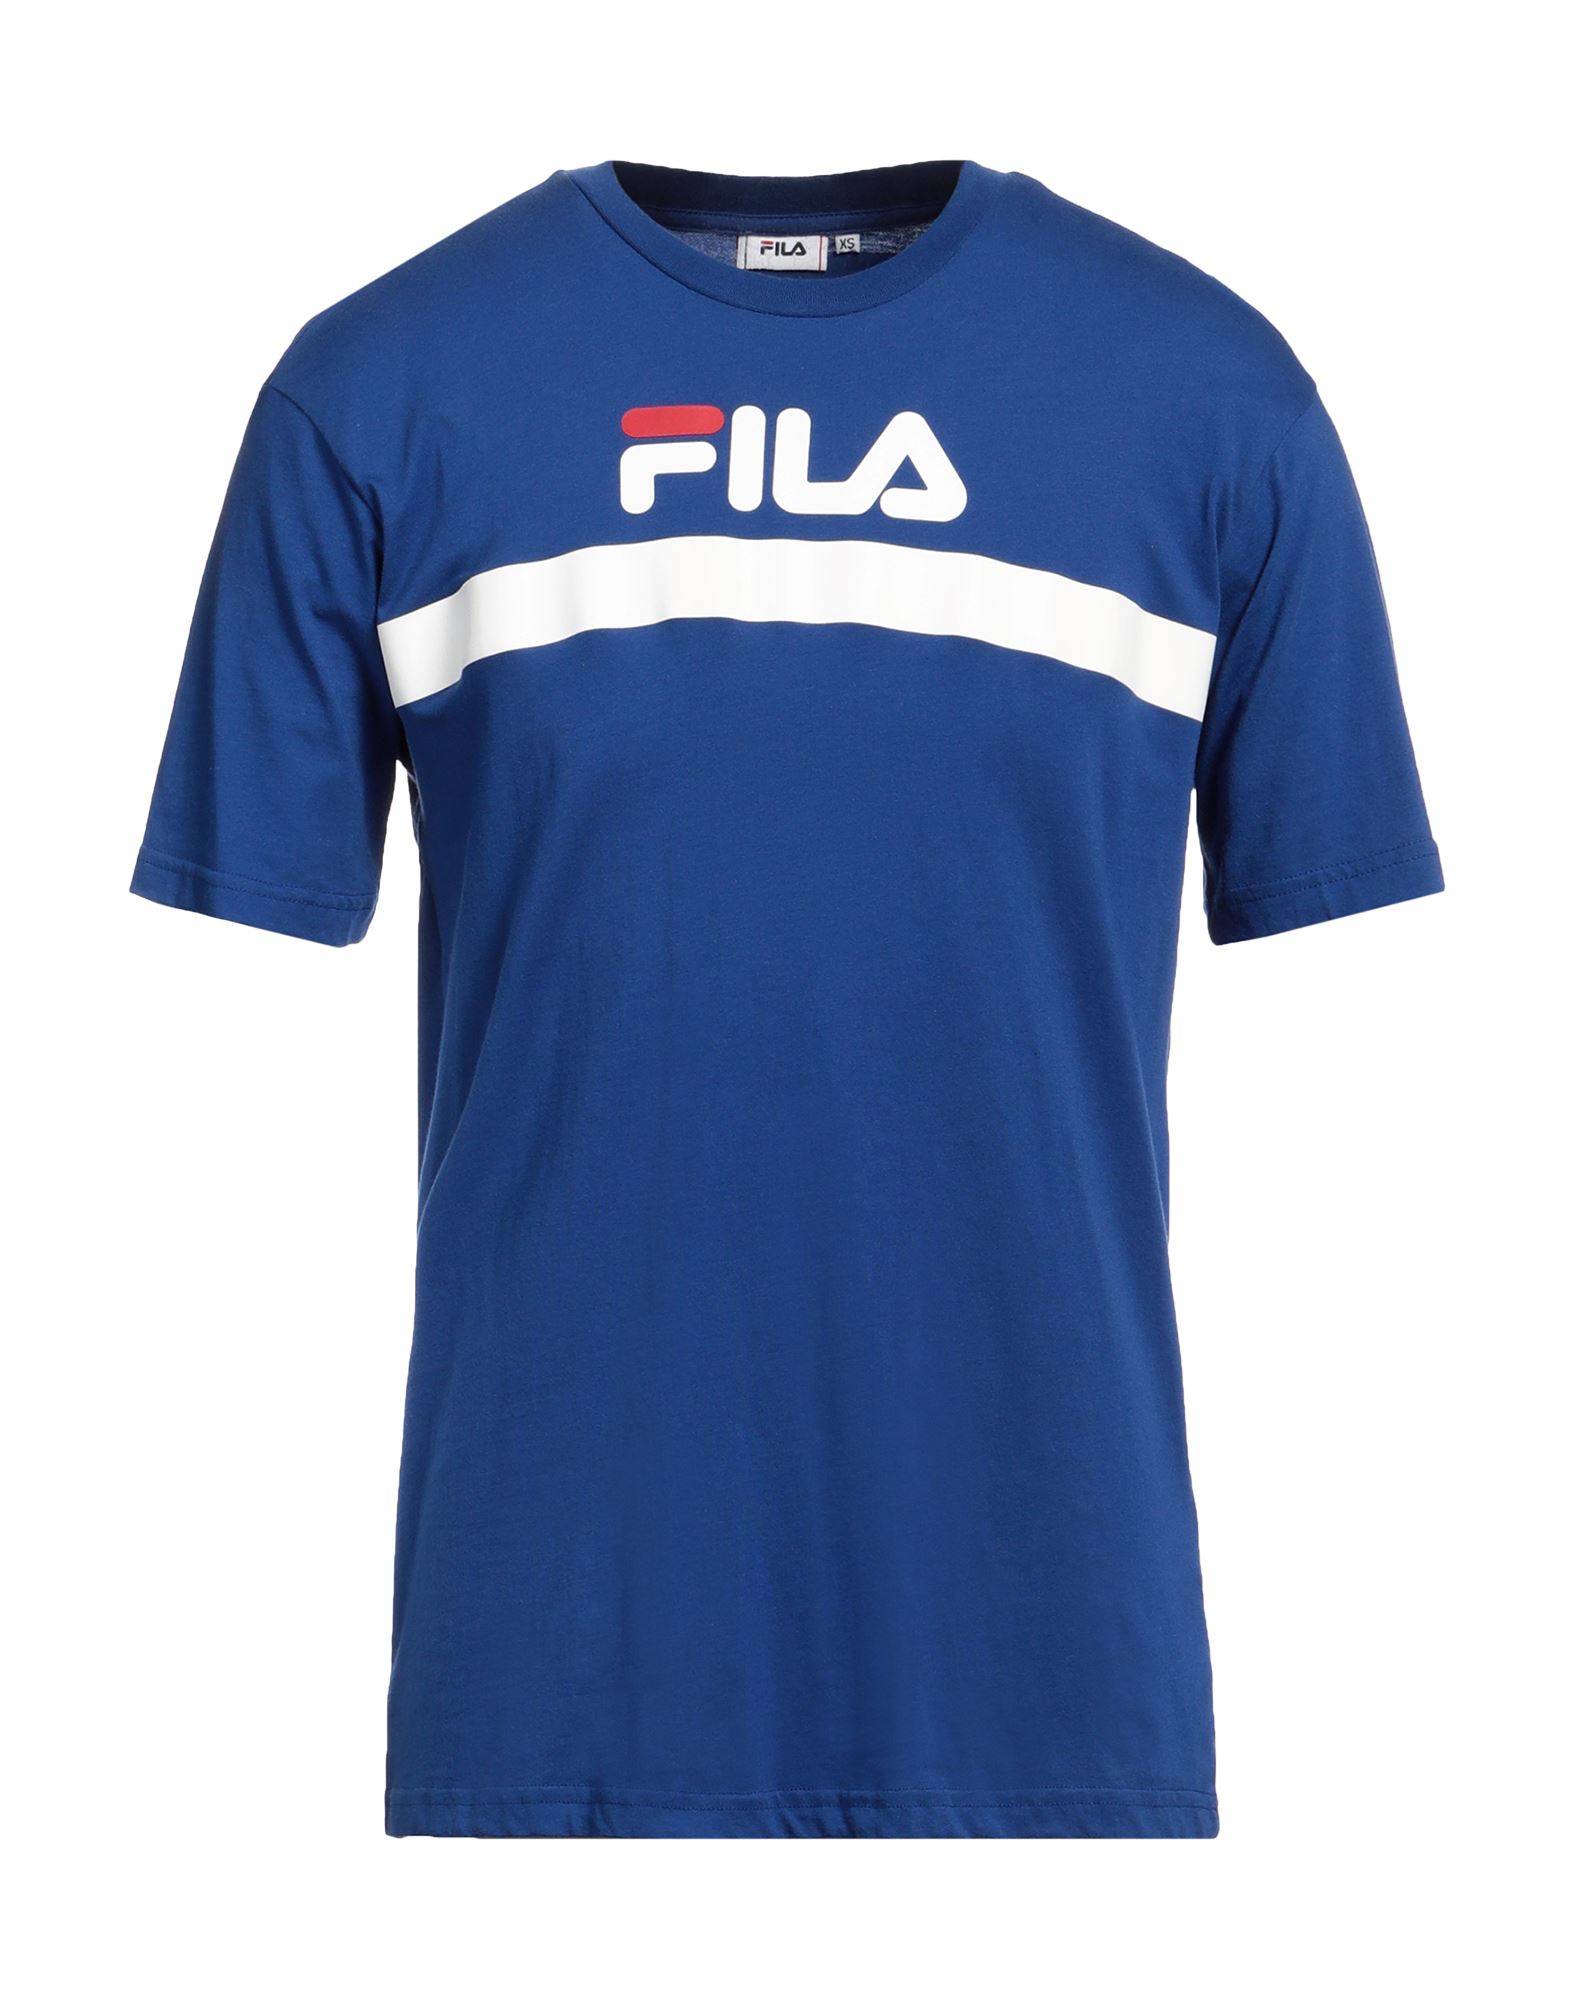 FILA T-shirts Herren Blau von FILA